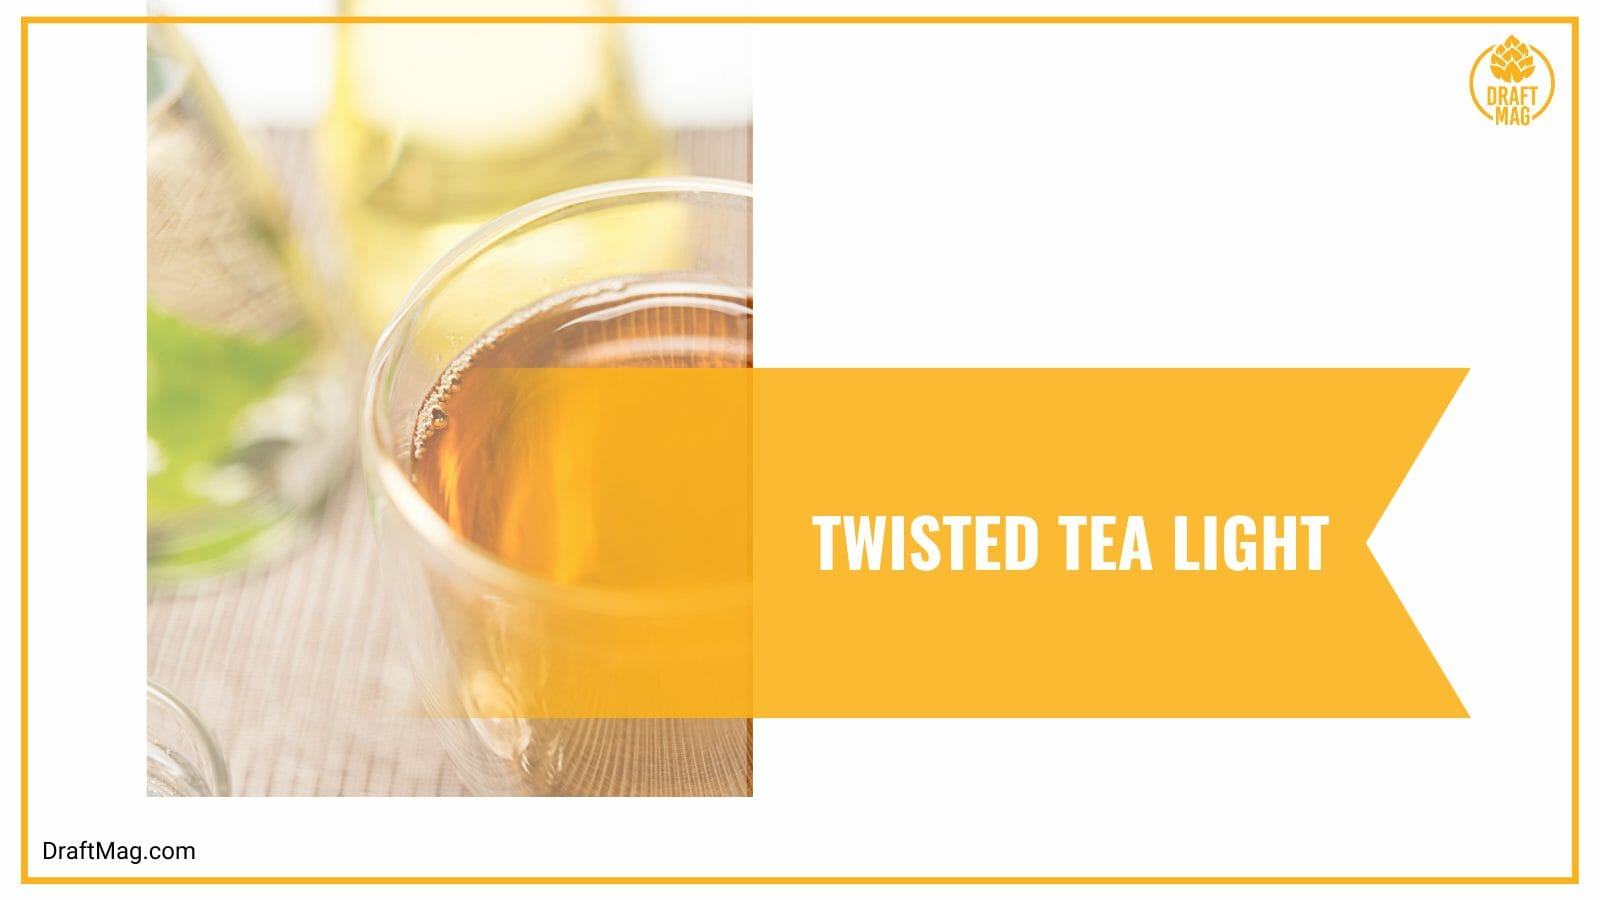 Twisted tea light